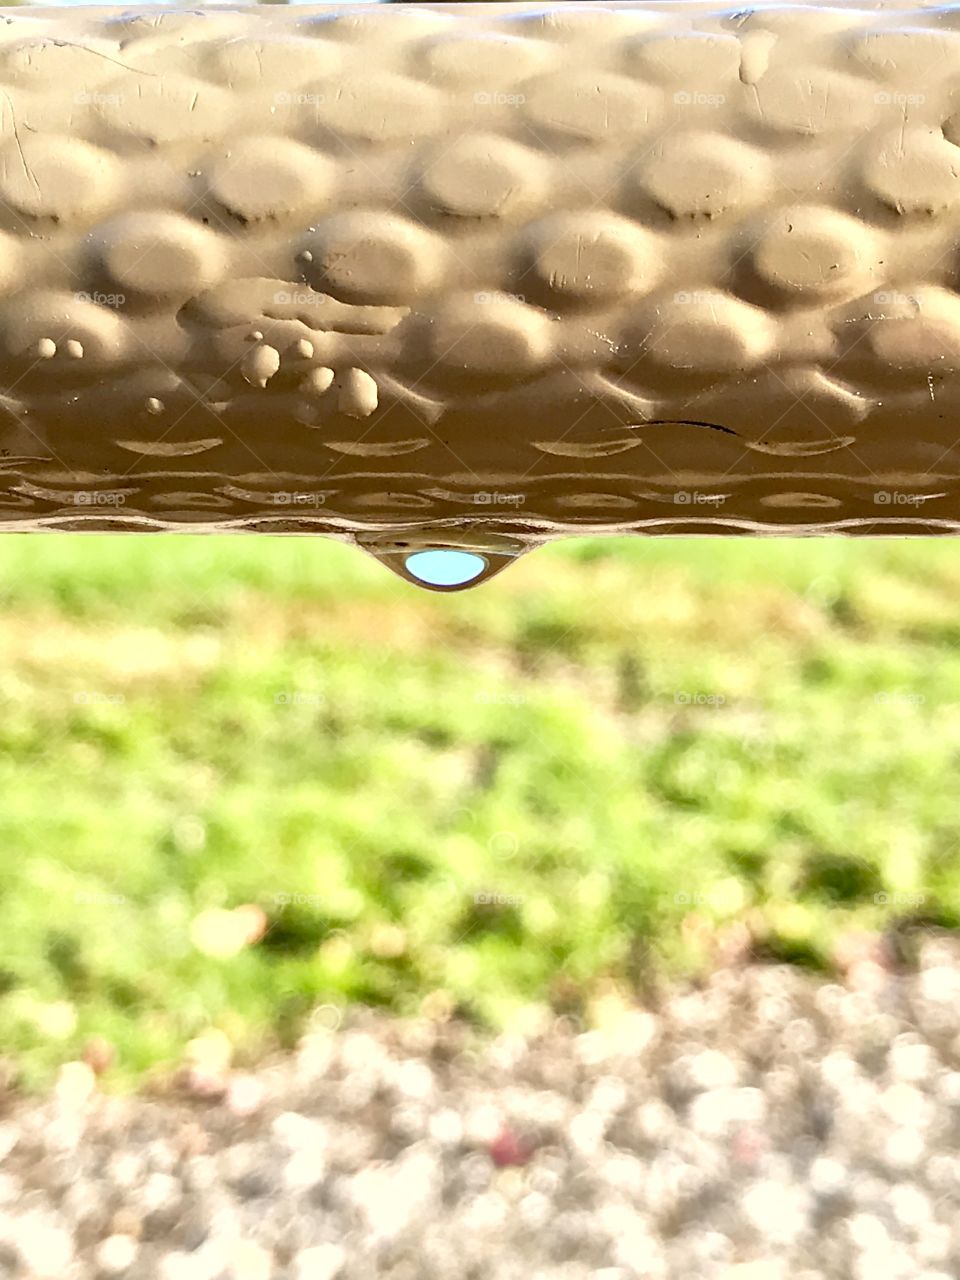 Dew drop